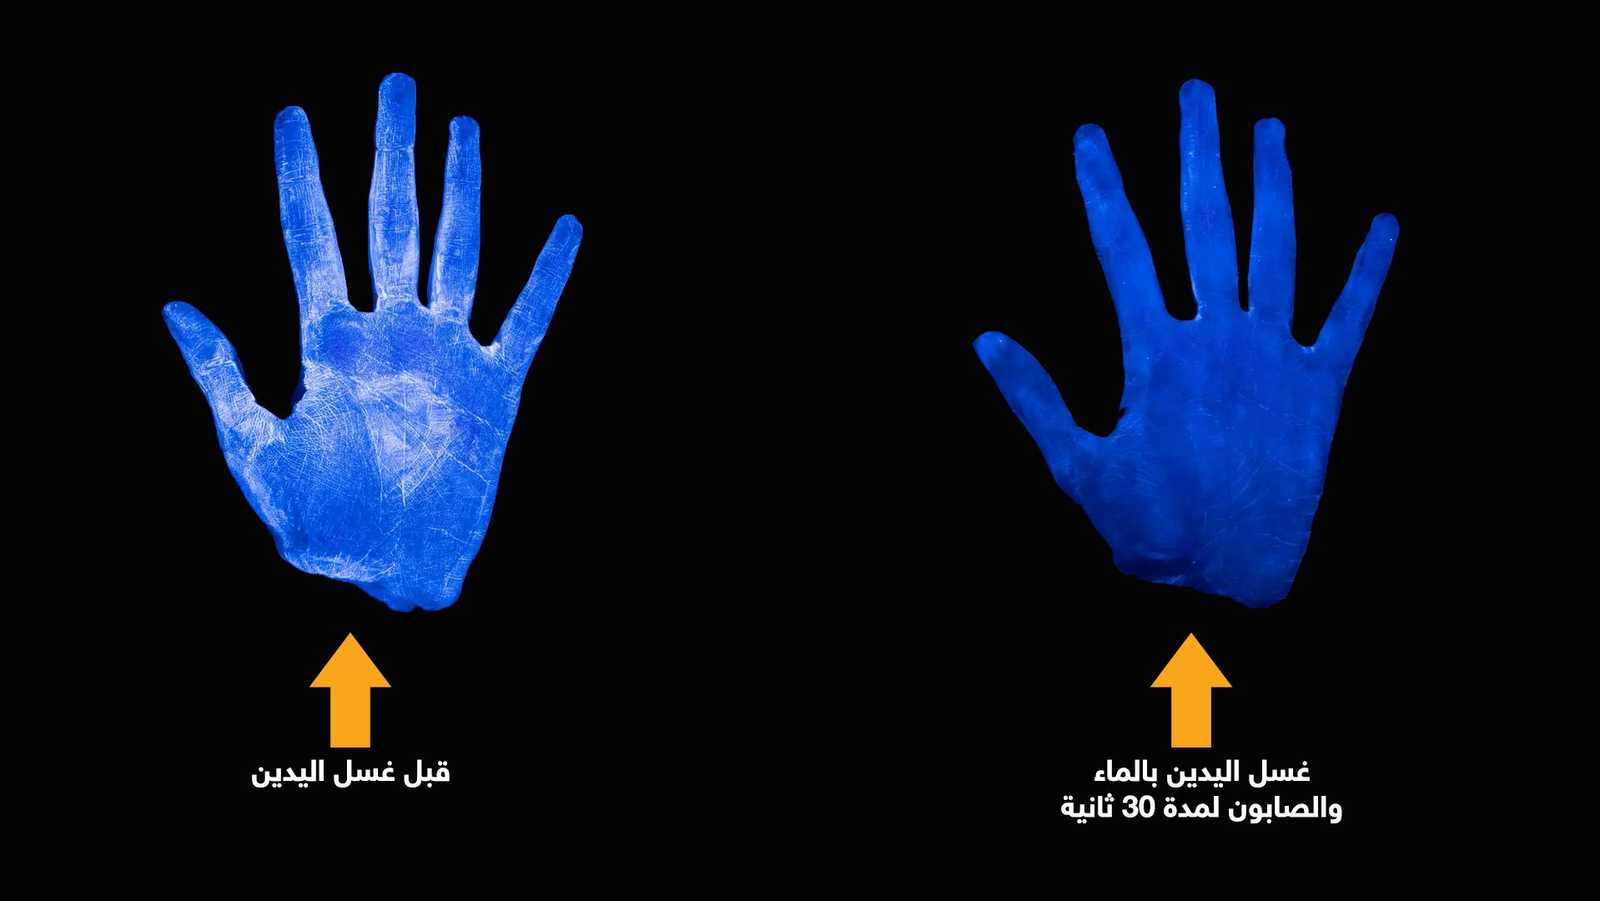 الفرق بين عدم غسل اليد وغسل اليد يالصابون